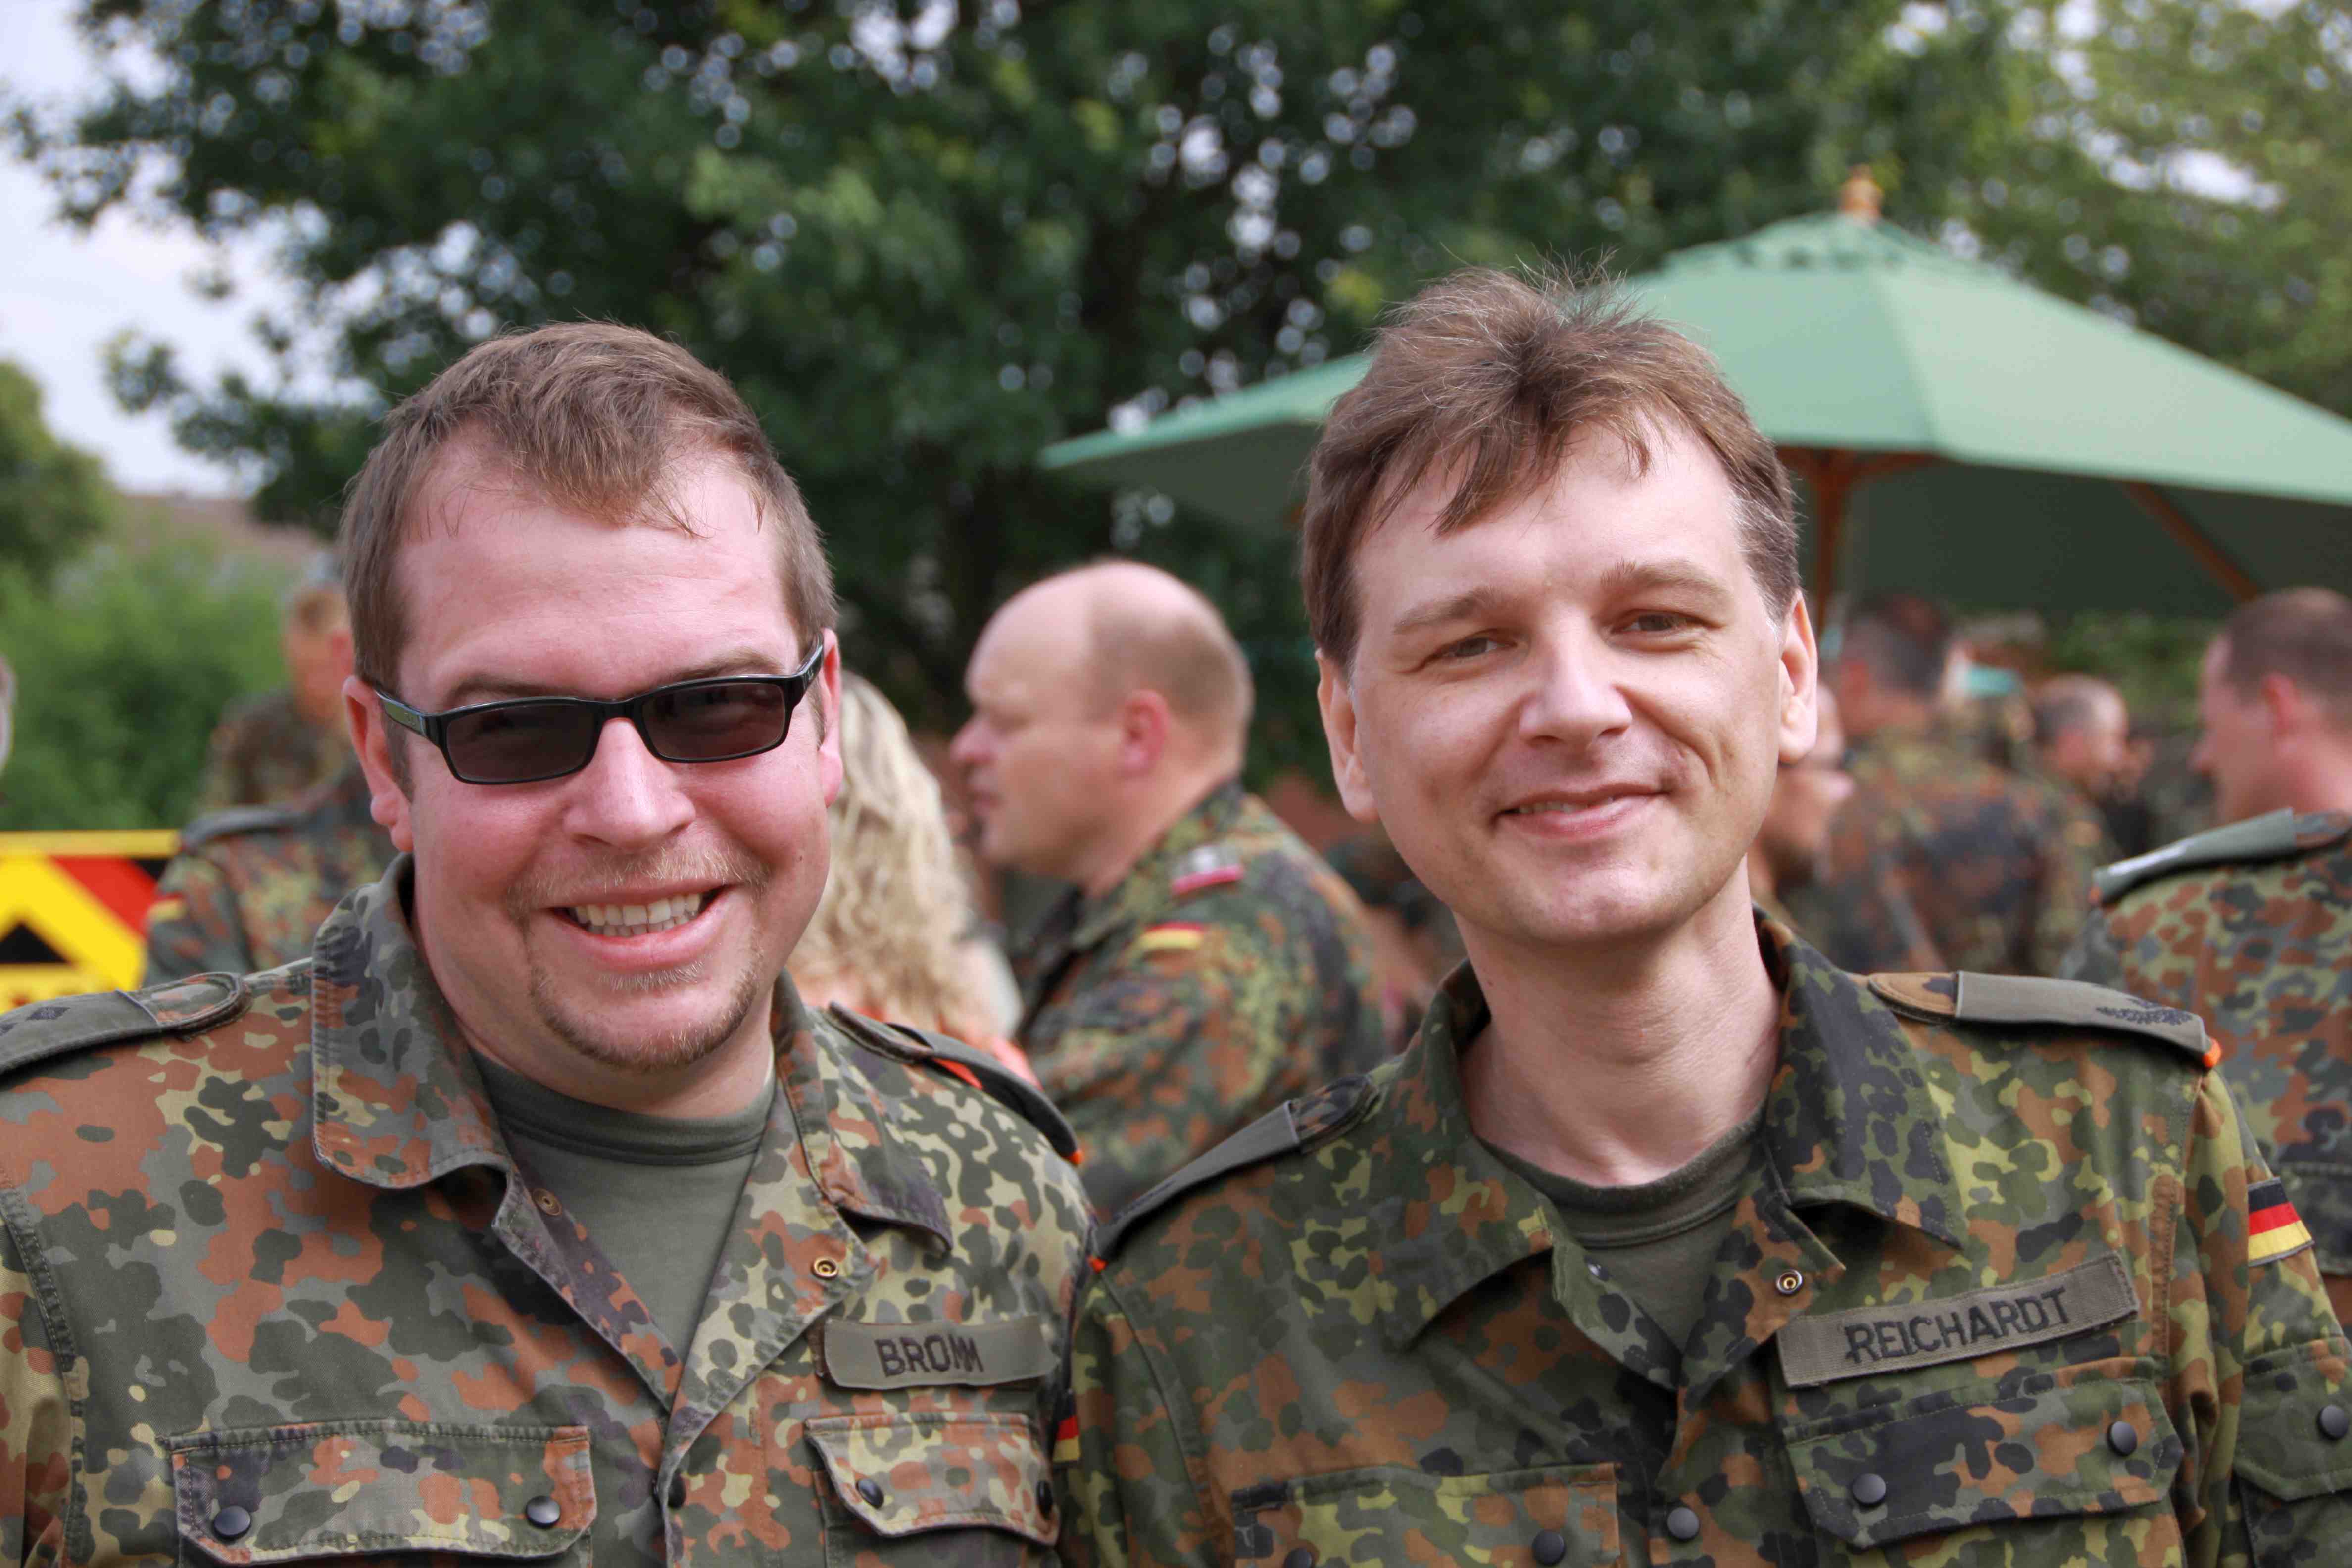 Hauptmann Bromm und Major Reichardt beim Feldjägertag 2013 in Hannover